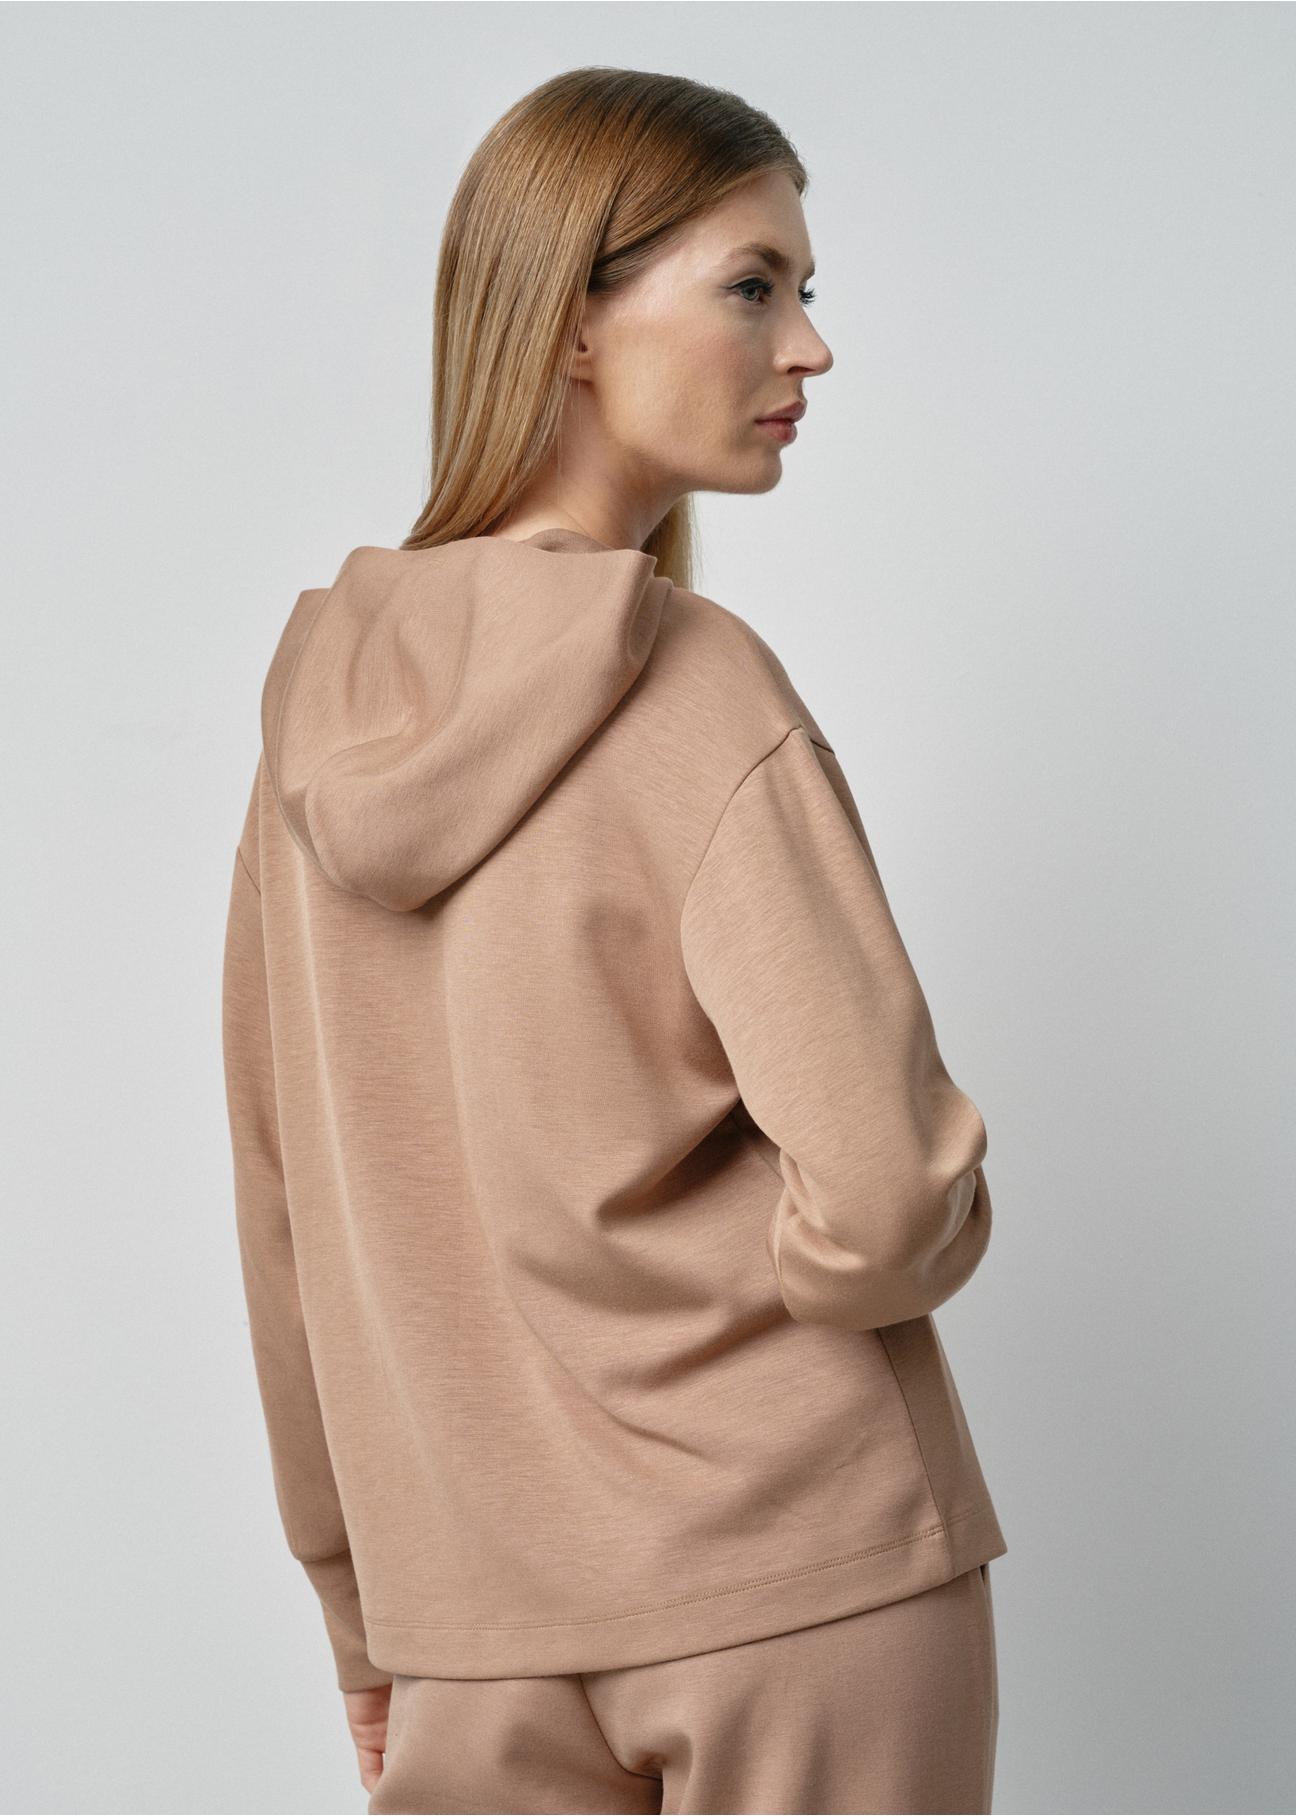 Bluza damska  z kapturem w kolorze camel BLZDT-0097-24(W24)